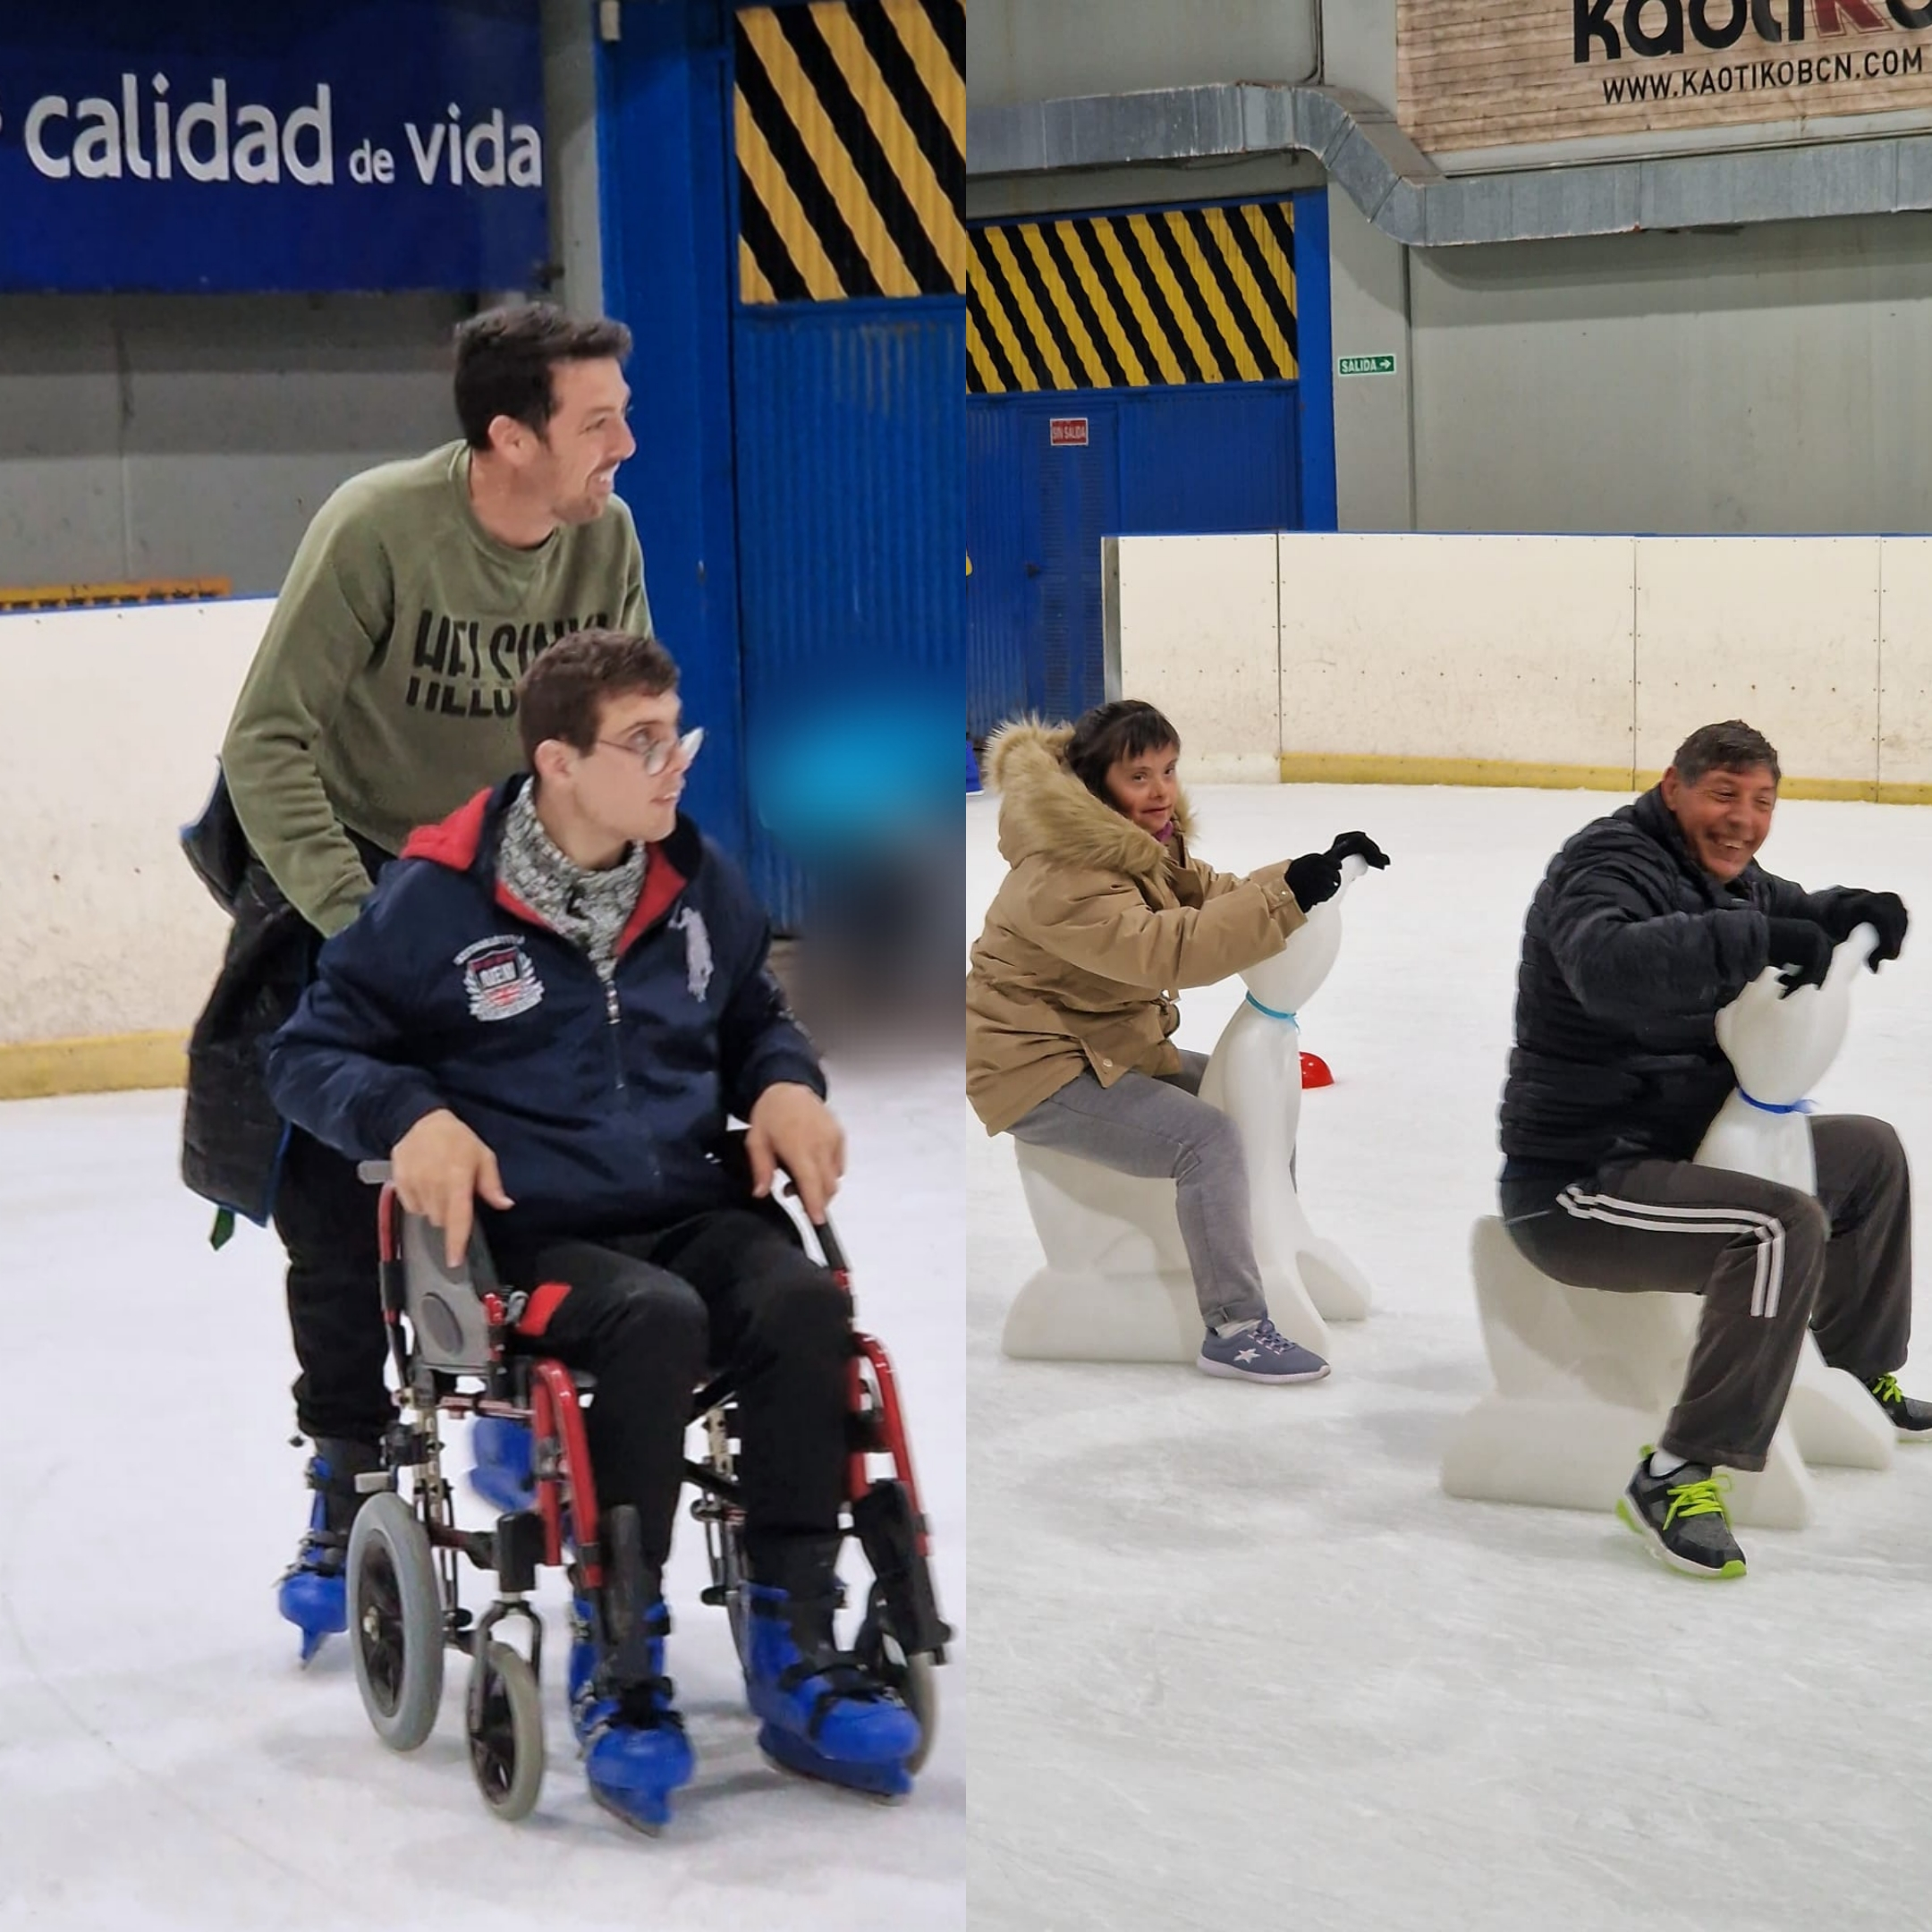 La Residencia y C.D. Jubalcoy practica patinaje adaptado